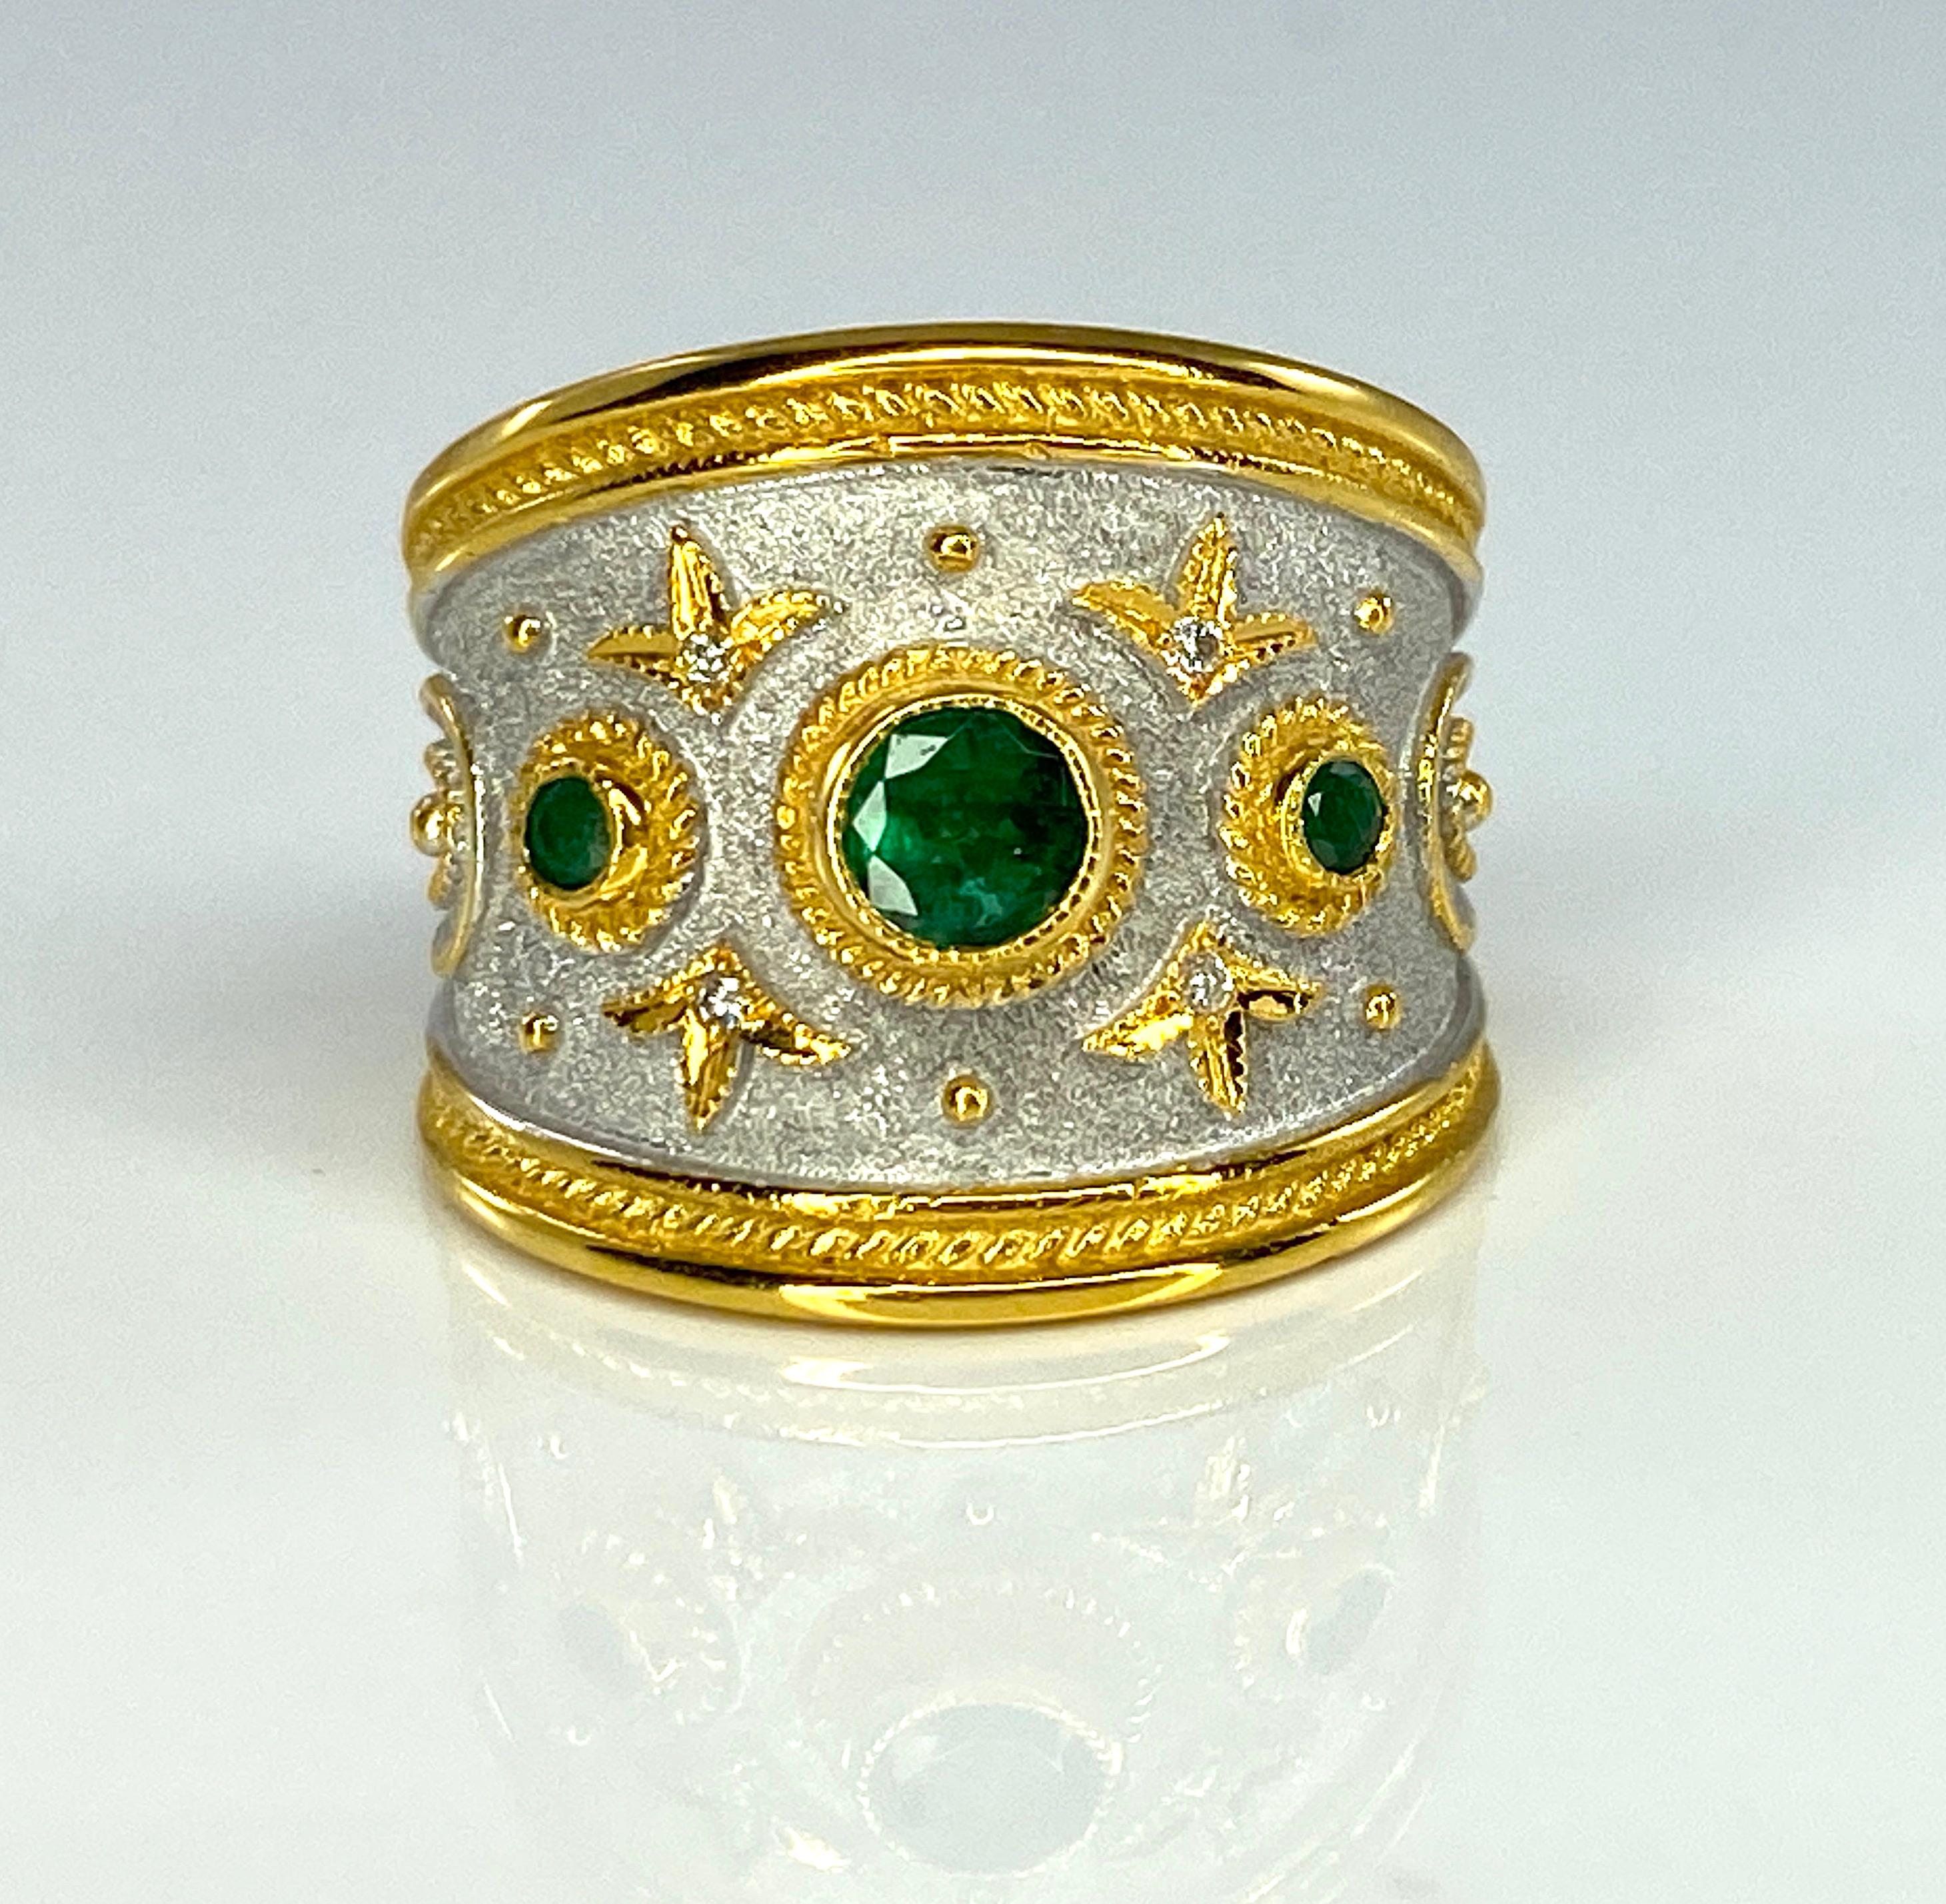 S.Georgios Designer-Ring aus 18 Karat Gelbgold ist handgefertigt im byzantinischen Stil - verziert mit einer Granulation, die sich von einem samtigen Hintergrund abhebt, der mit weißem Rhodium veredelt ist. Der Ring enthält 3 Smaragde im